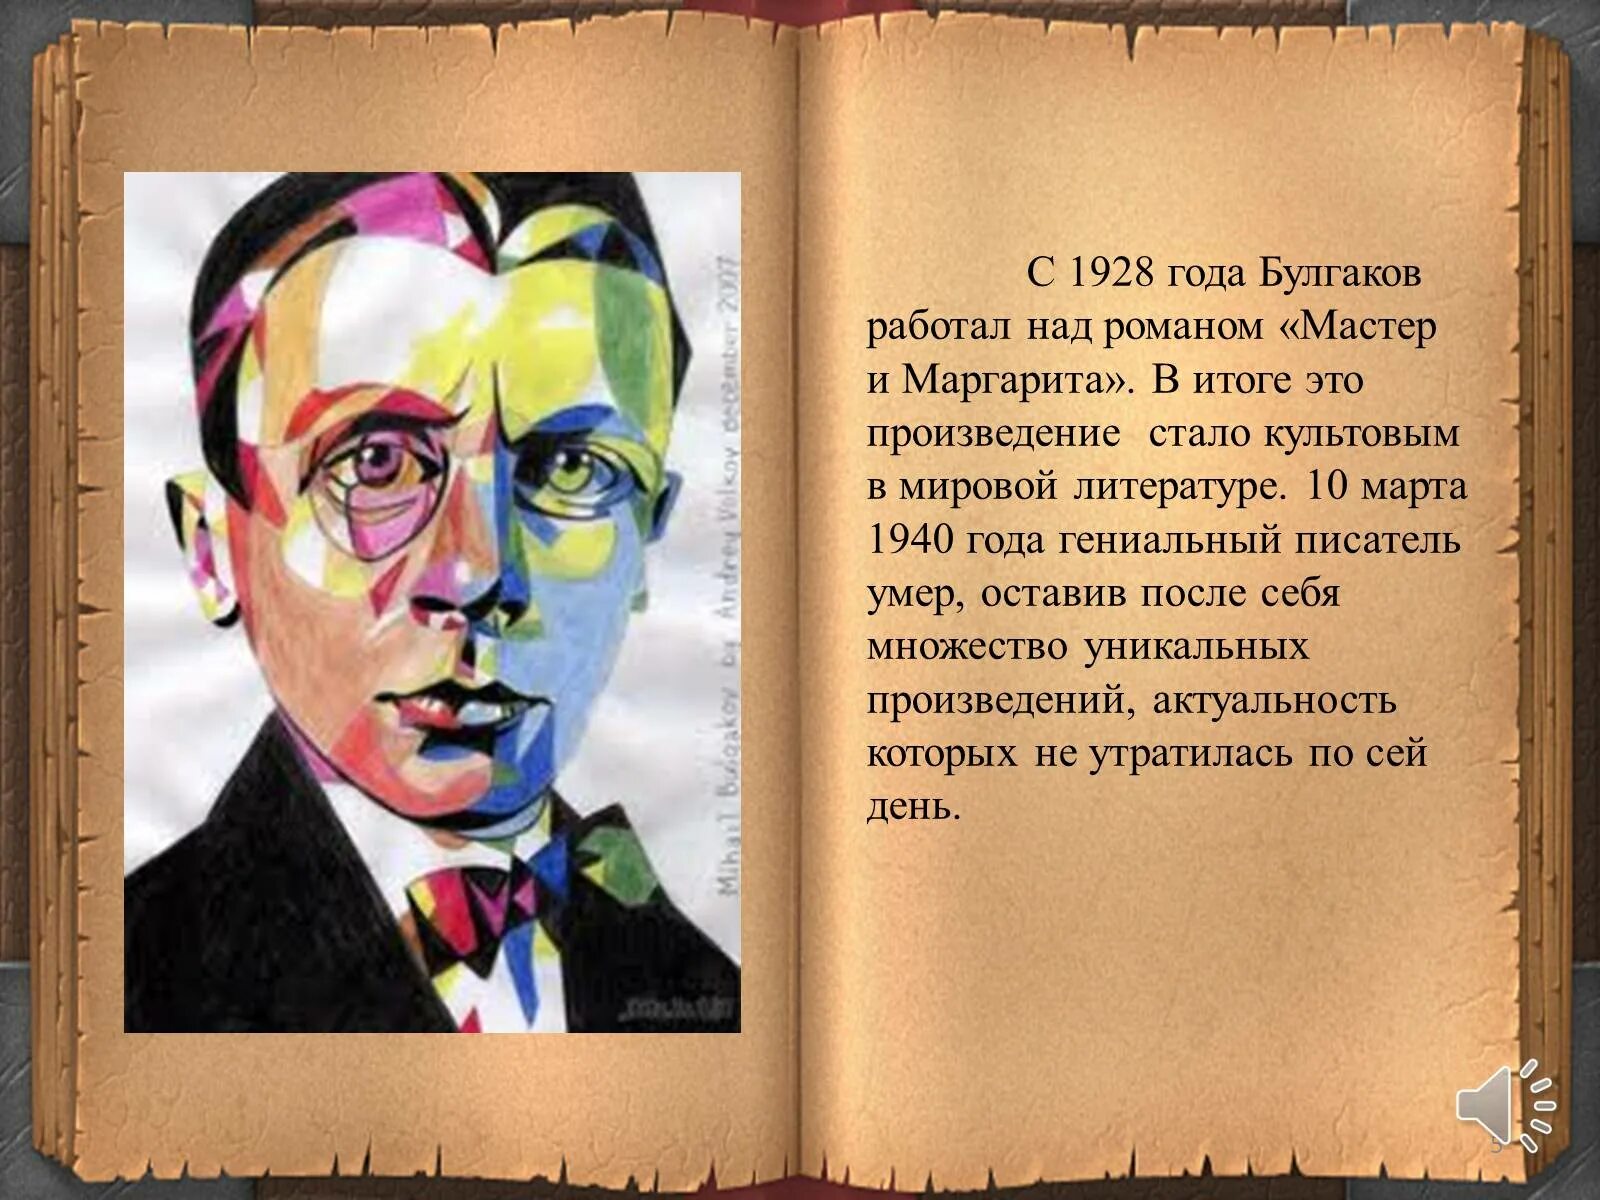 Любимые герои булгакова. Булгаков 1928. 1928-1940 Булгаков. Булгаков презентация.